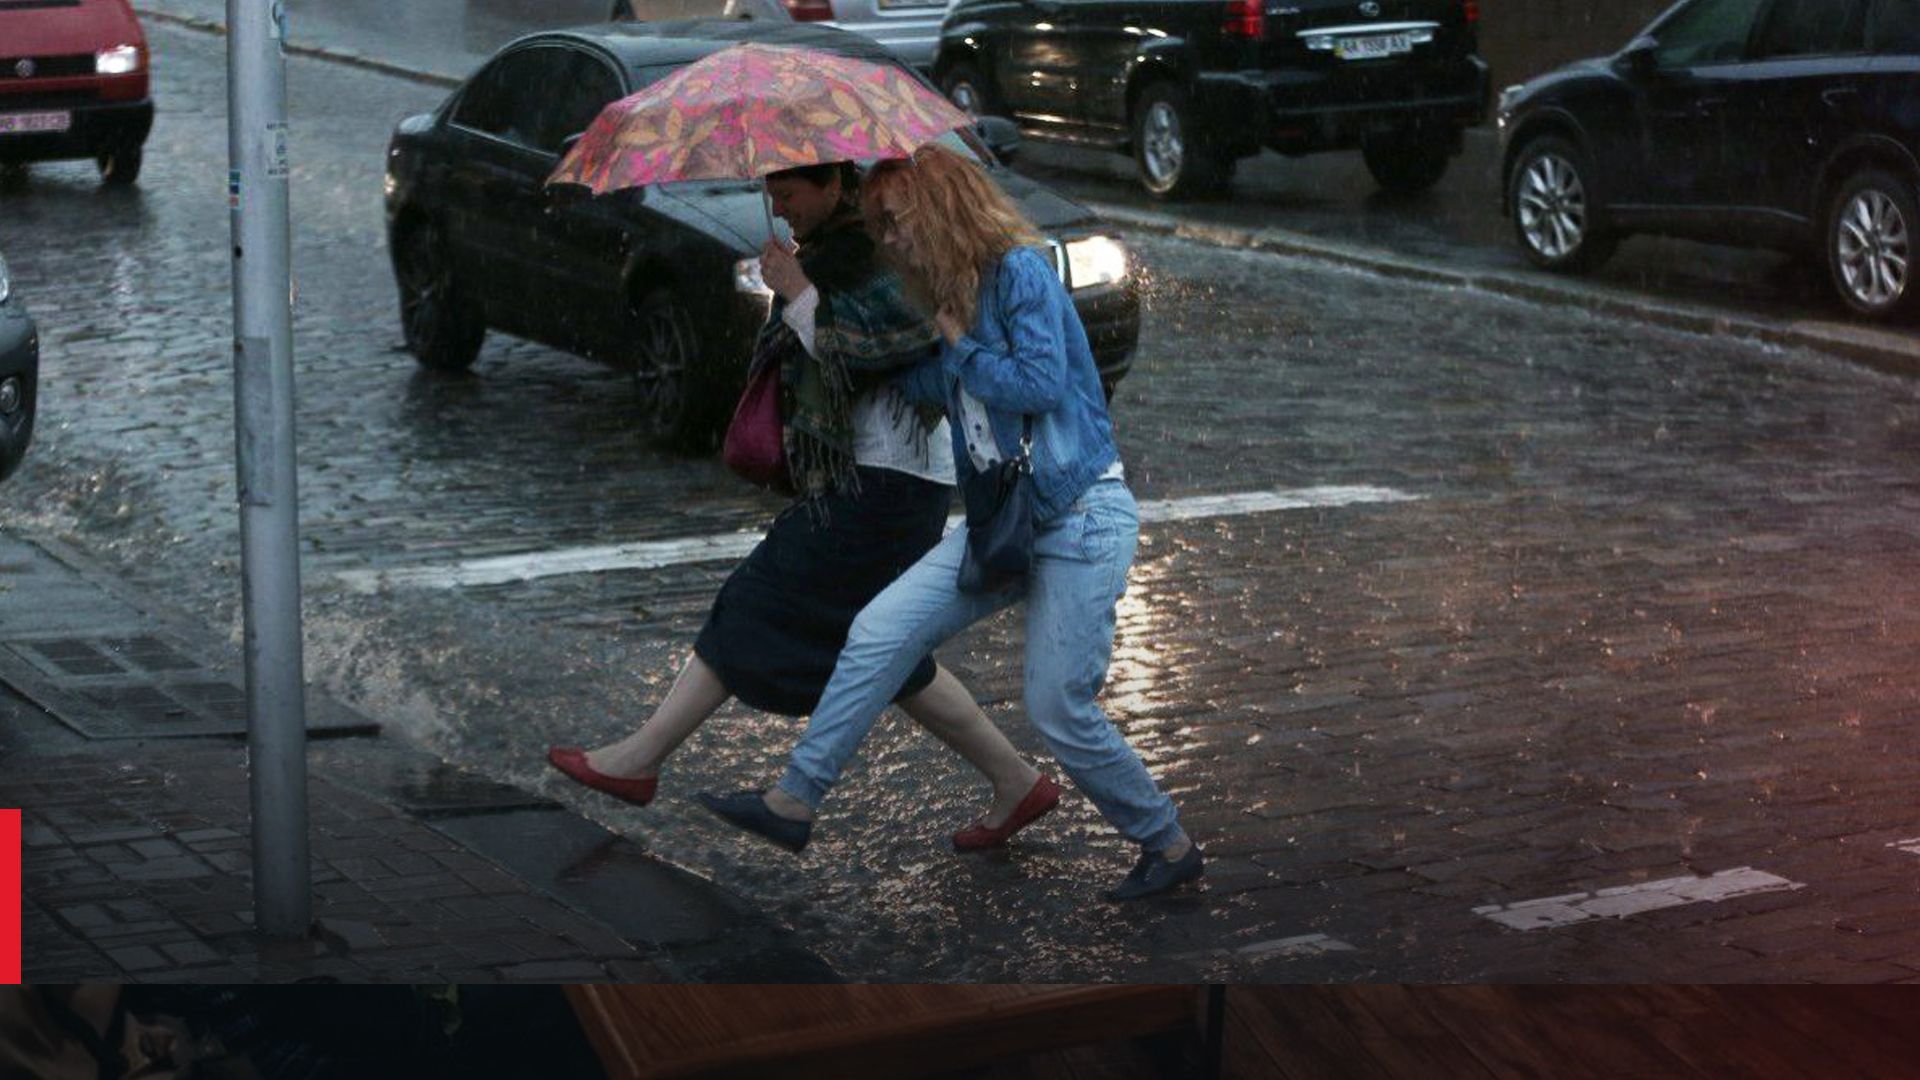 В Украину идут дожди с грозами